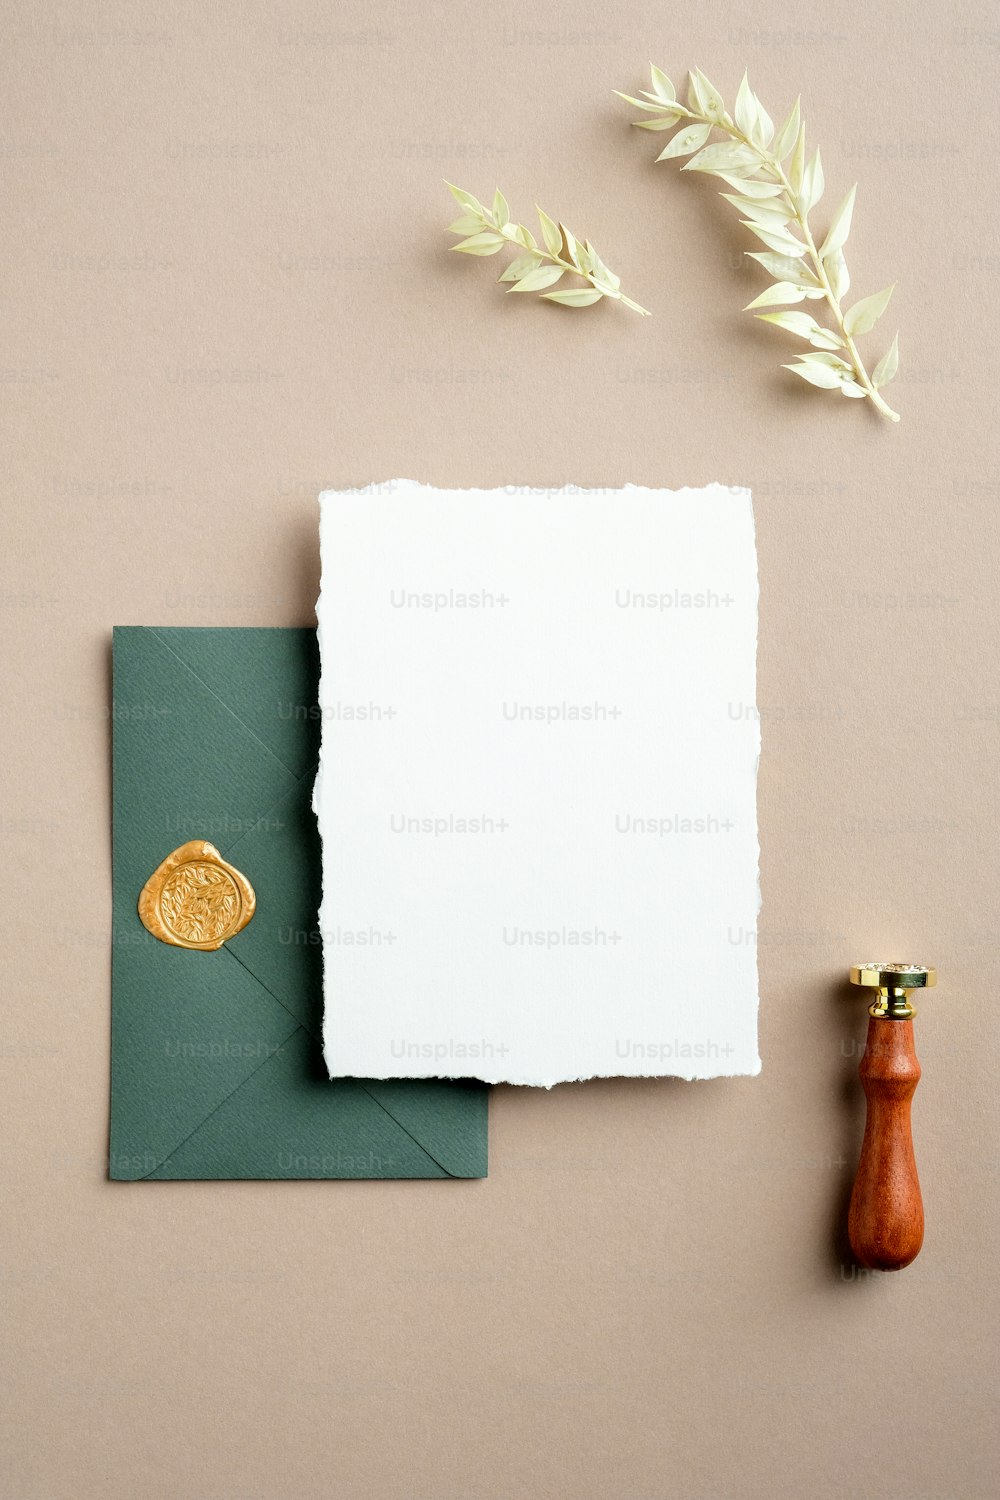 Scène de maquette de papeterie de mariage élégante. Carte de voeux vierge, enveloppe verte avec cachet de cire, fleurs séchées sur fond beige pastel. Pose à plat, vue de dessus, verticale.